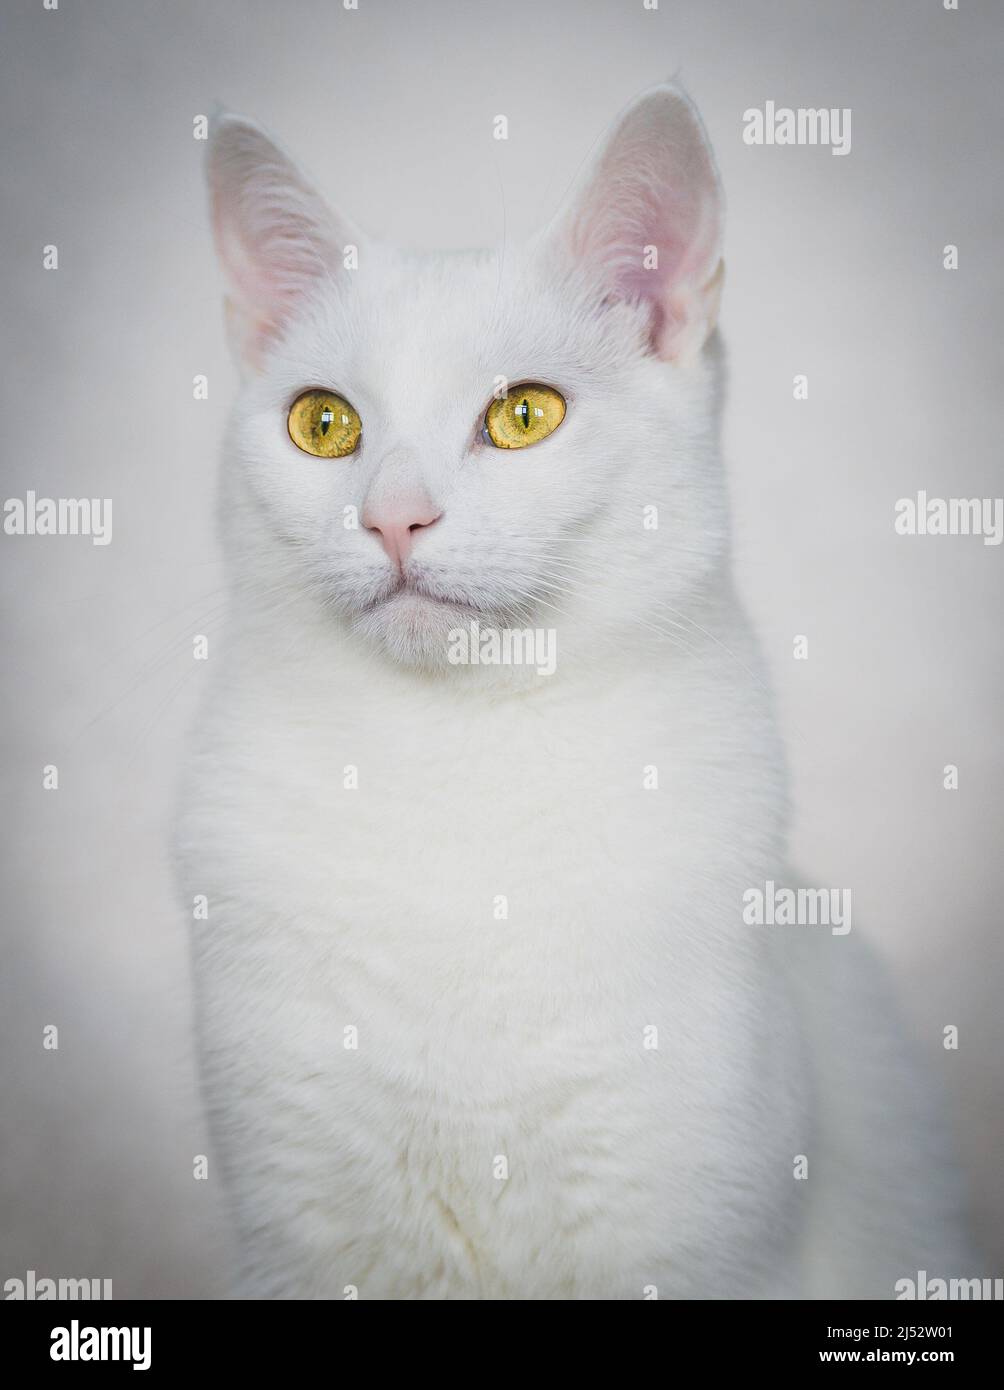 Ritratto di un gatto bianco con occhi gialli seduti su un divano Foto Stock